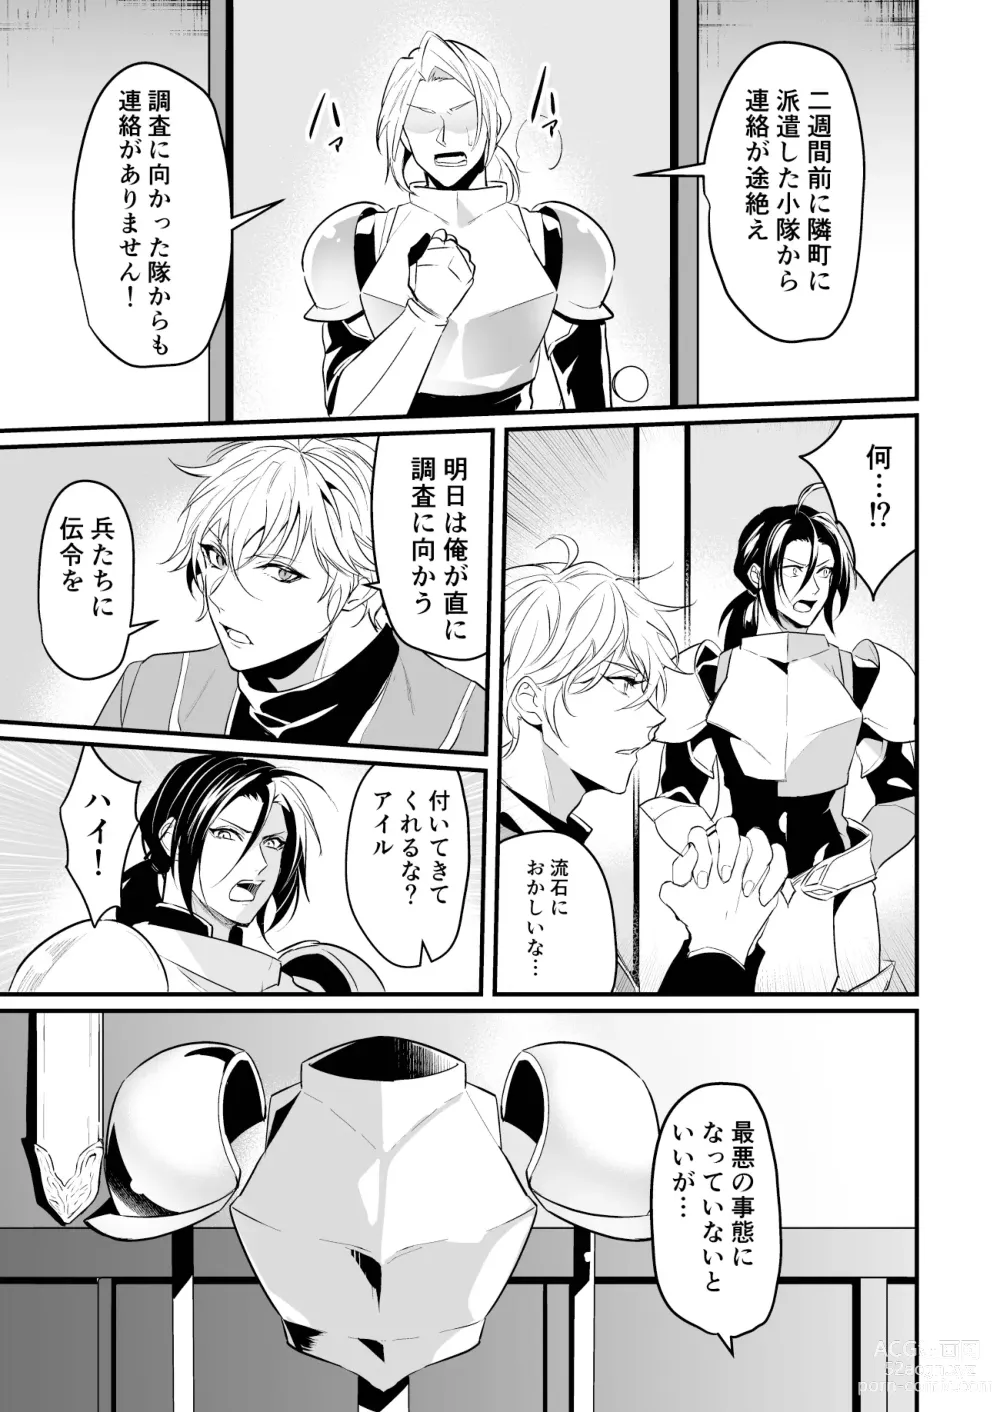 Page 4 of doujinshi Ochita ri sei